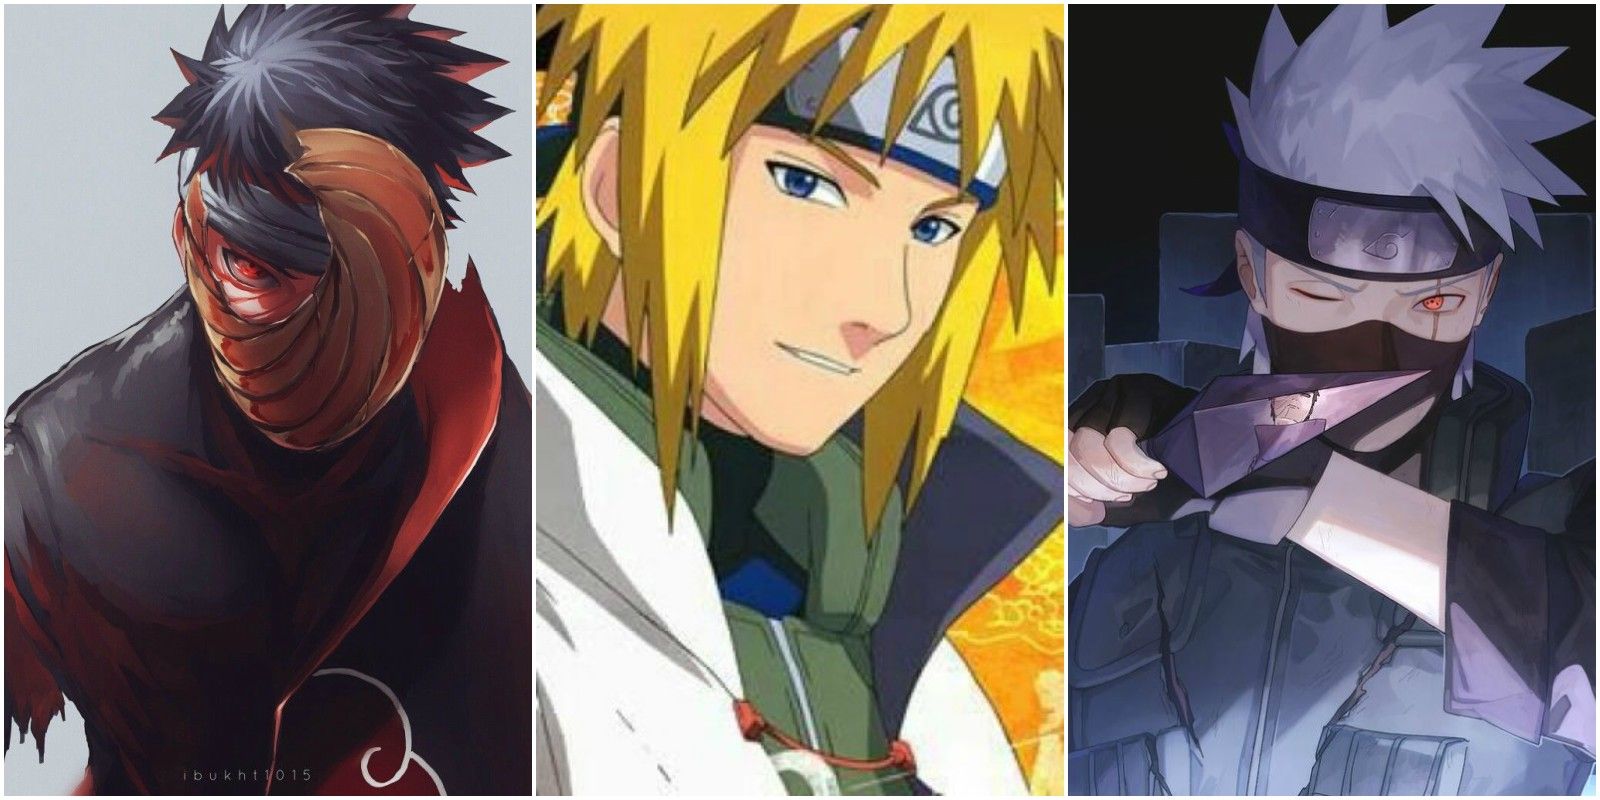 Fotos De Los Personajes De Naruto